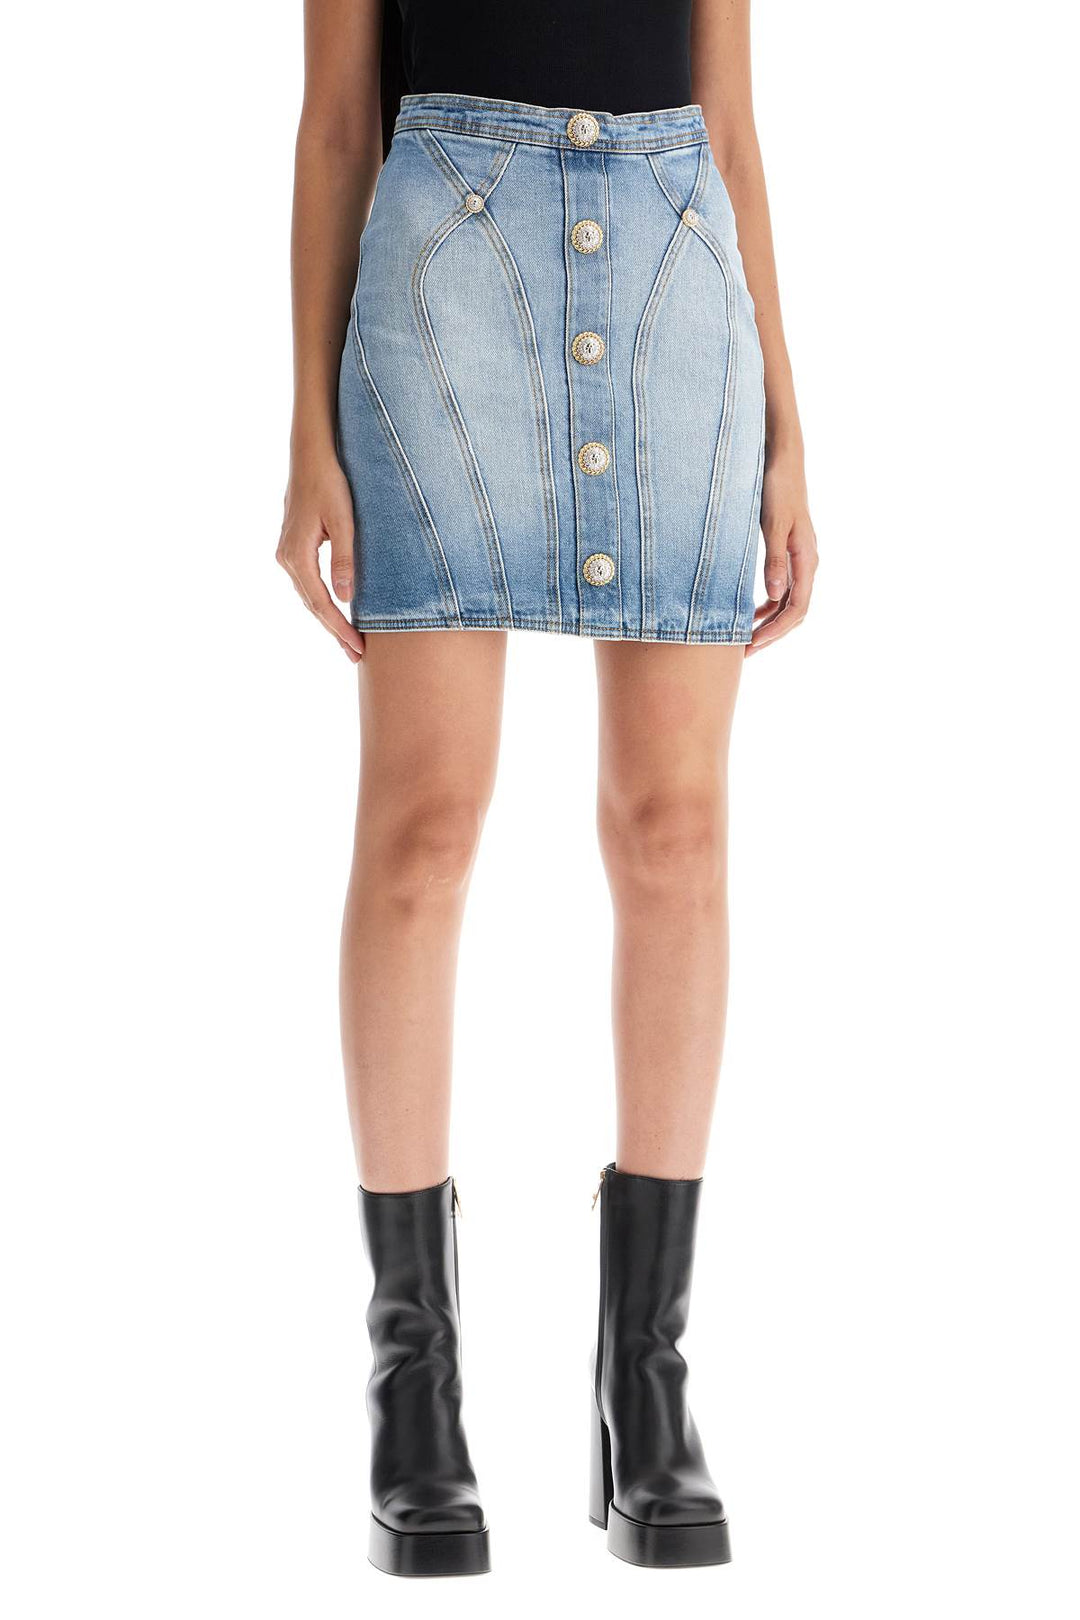 Balmain Mini Skirt With Double Chain Lion Button Details   Blue